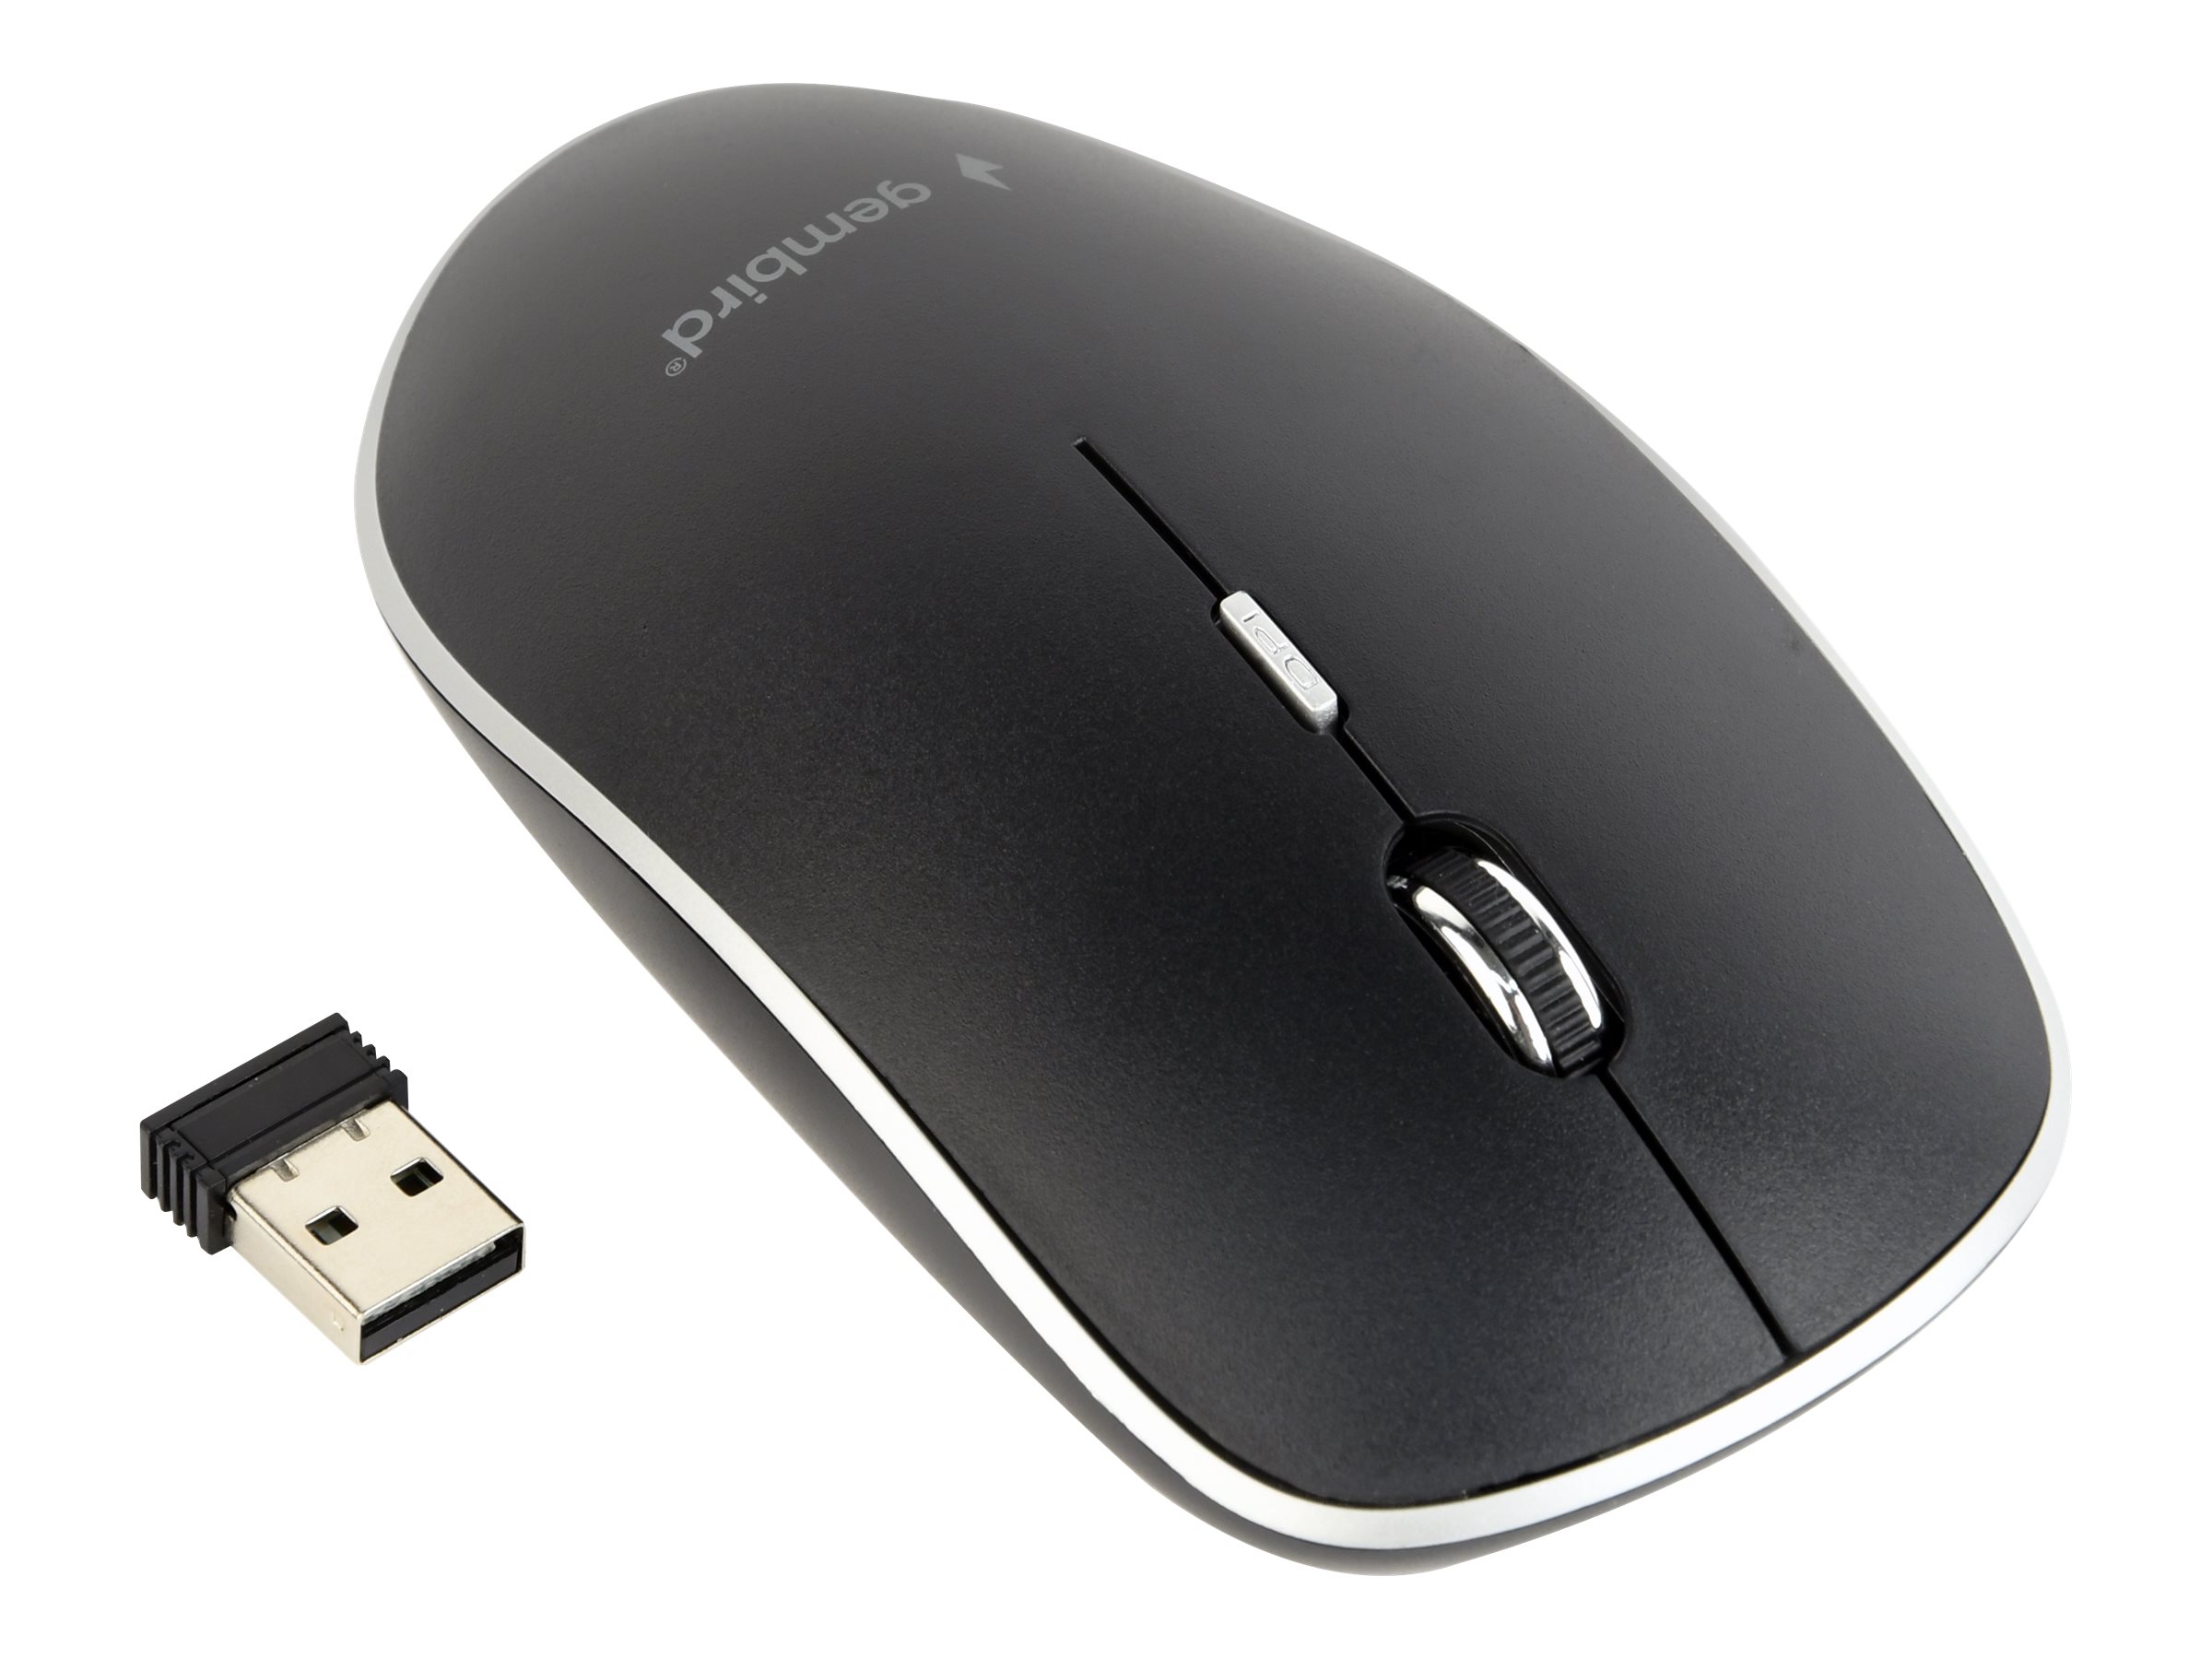 GEMBIRD Silent wireless optical mouse black [Towar z magazynu zewnętrznego (na specjalne zamówienie). Towar nie podlega zwrotowi. Czas oczekiwania do 5 dni roboczych.]